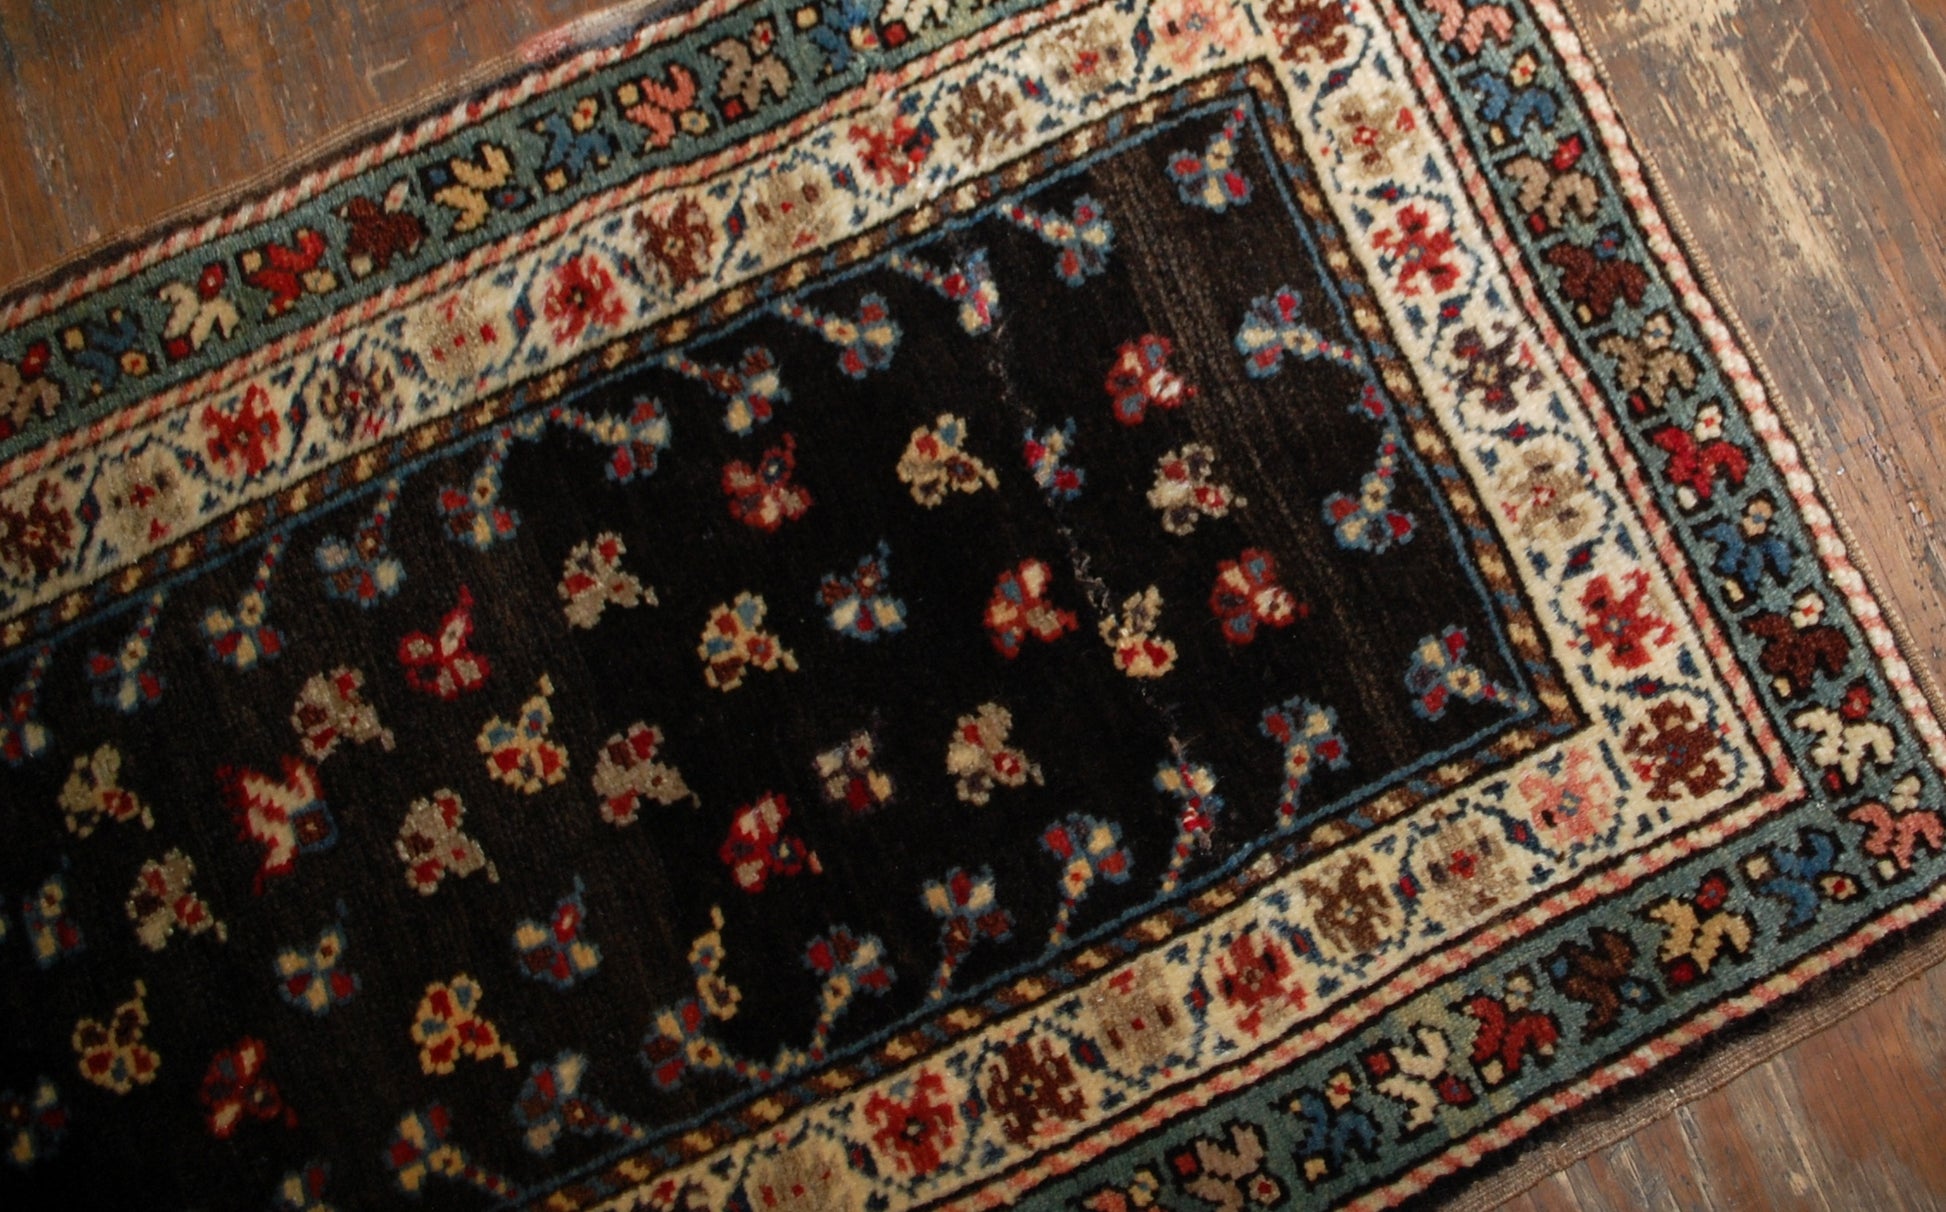 Handmade antique Caucasian Gendje rug 1880s